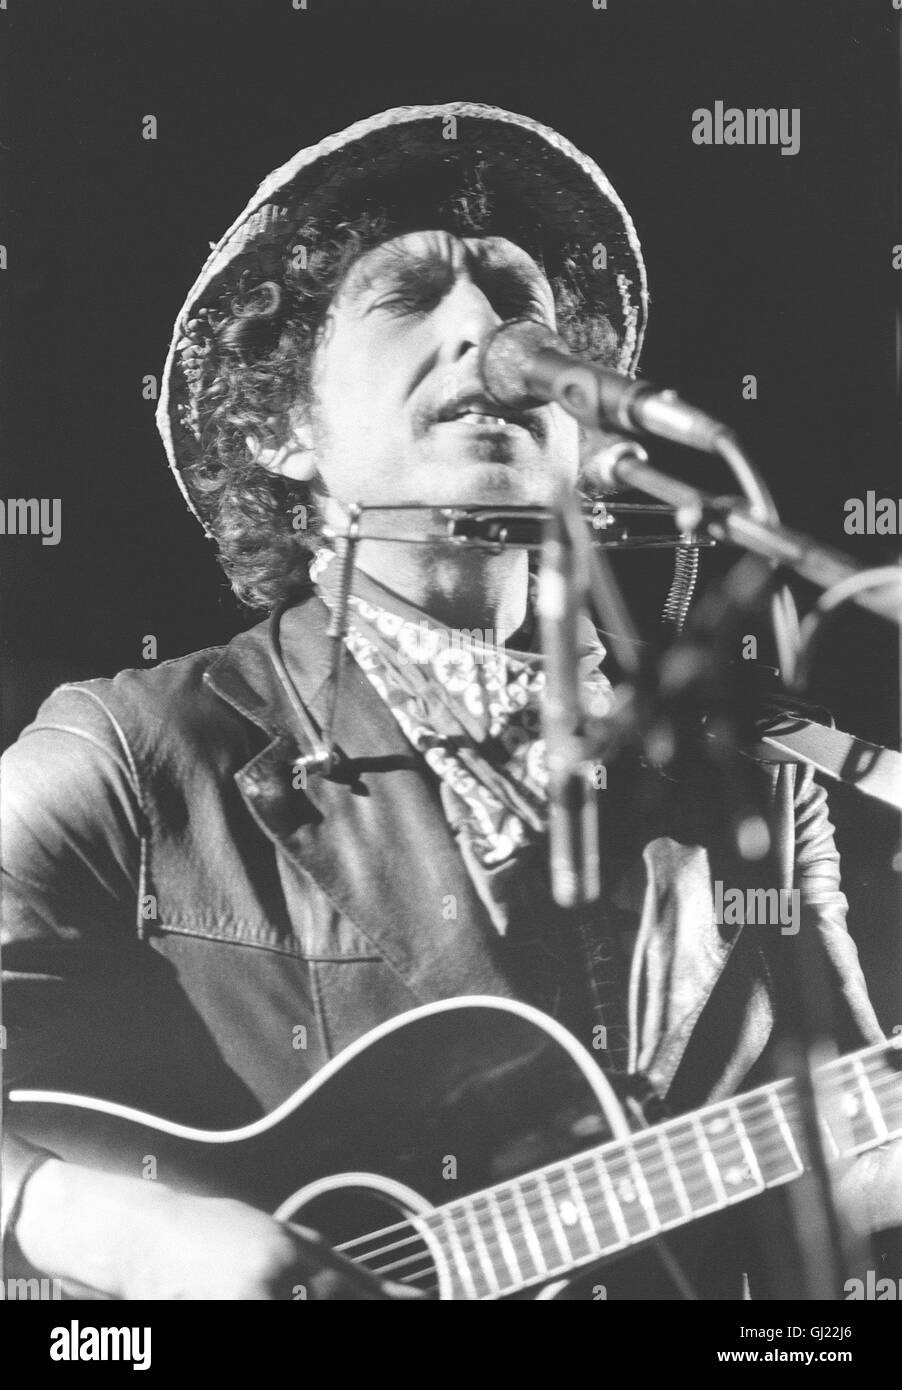 BOB DYLAN - Le cose hanno (indossava) Cambiato Bild: Bob Dylan bei einem Konzert in den 1980er Jahren. Auch Rocklegenden werden älter. BOB DYLAN wurde am 24. Mai 2001 - 60 Jahre alt. Über 500 brani hat er seit den frühen 60er Jahren geschrieben, knapp 50 Alben eingespielt. Er begann als der spröde Star der gegen stabilimento und Vietnam aufbegehrenden Jugend, der genius loci von Woodstock, wo er lebte lange, aber nicht auftrat. Irgendwann in den 80er Jahren begann Dylan dann weltweit aufzutreten. Bis heute. Wenn Legenden altern, werden Sie dekoriert: 2000 fiel sein nome im Zusammenhang mit dem Foto Stock